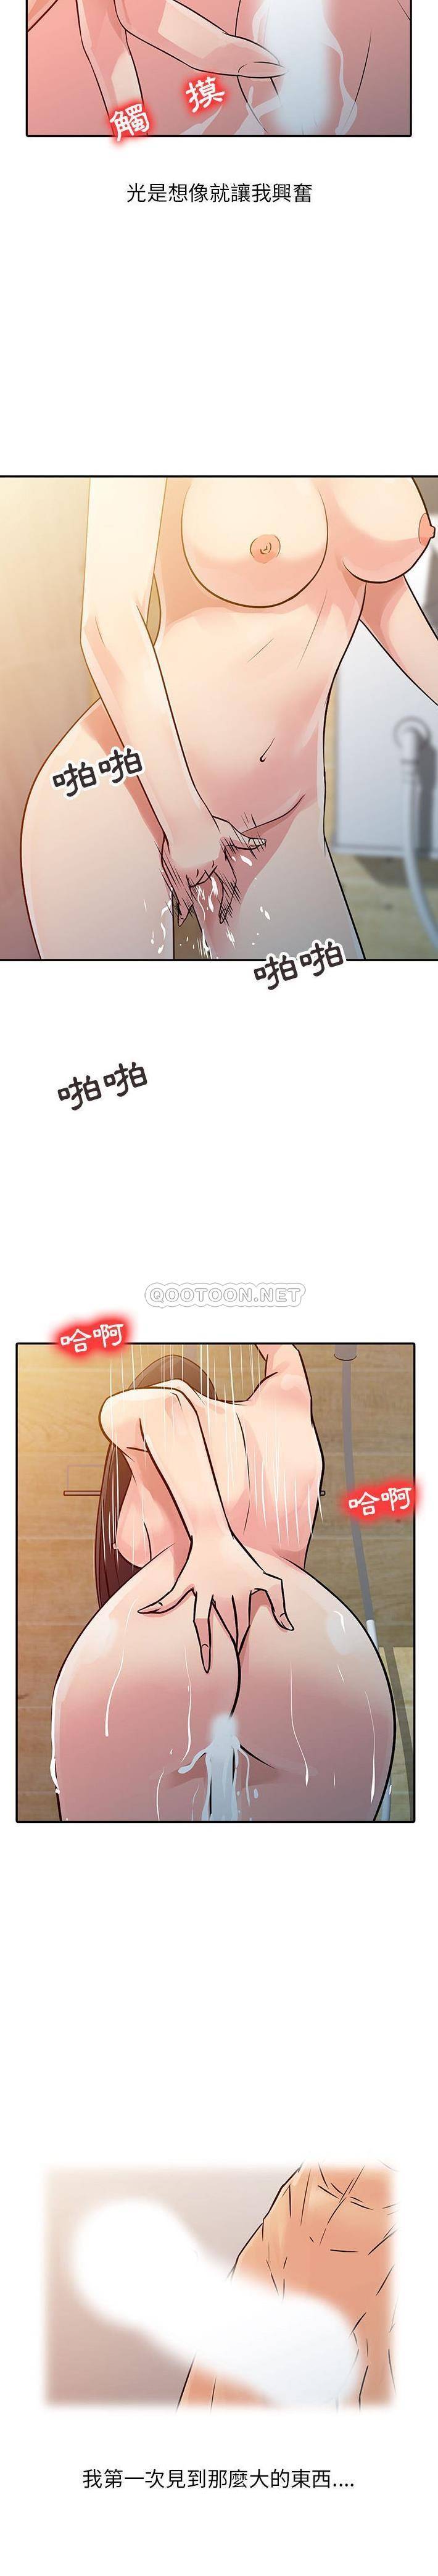 韩国污漫画 征服的滋味 第9话 12